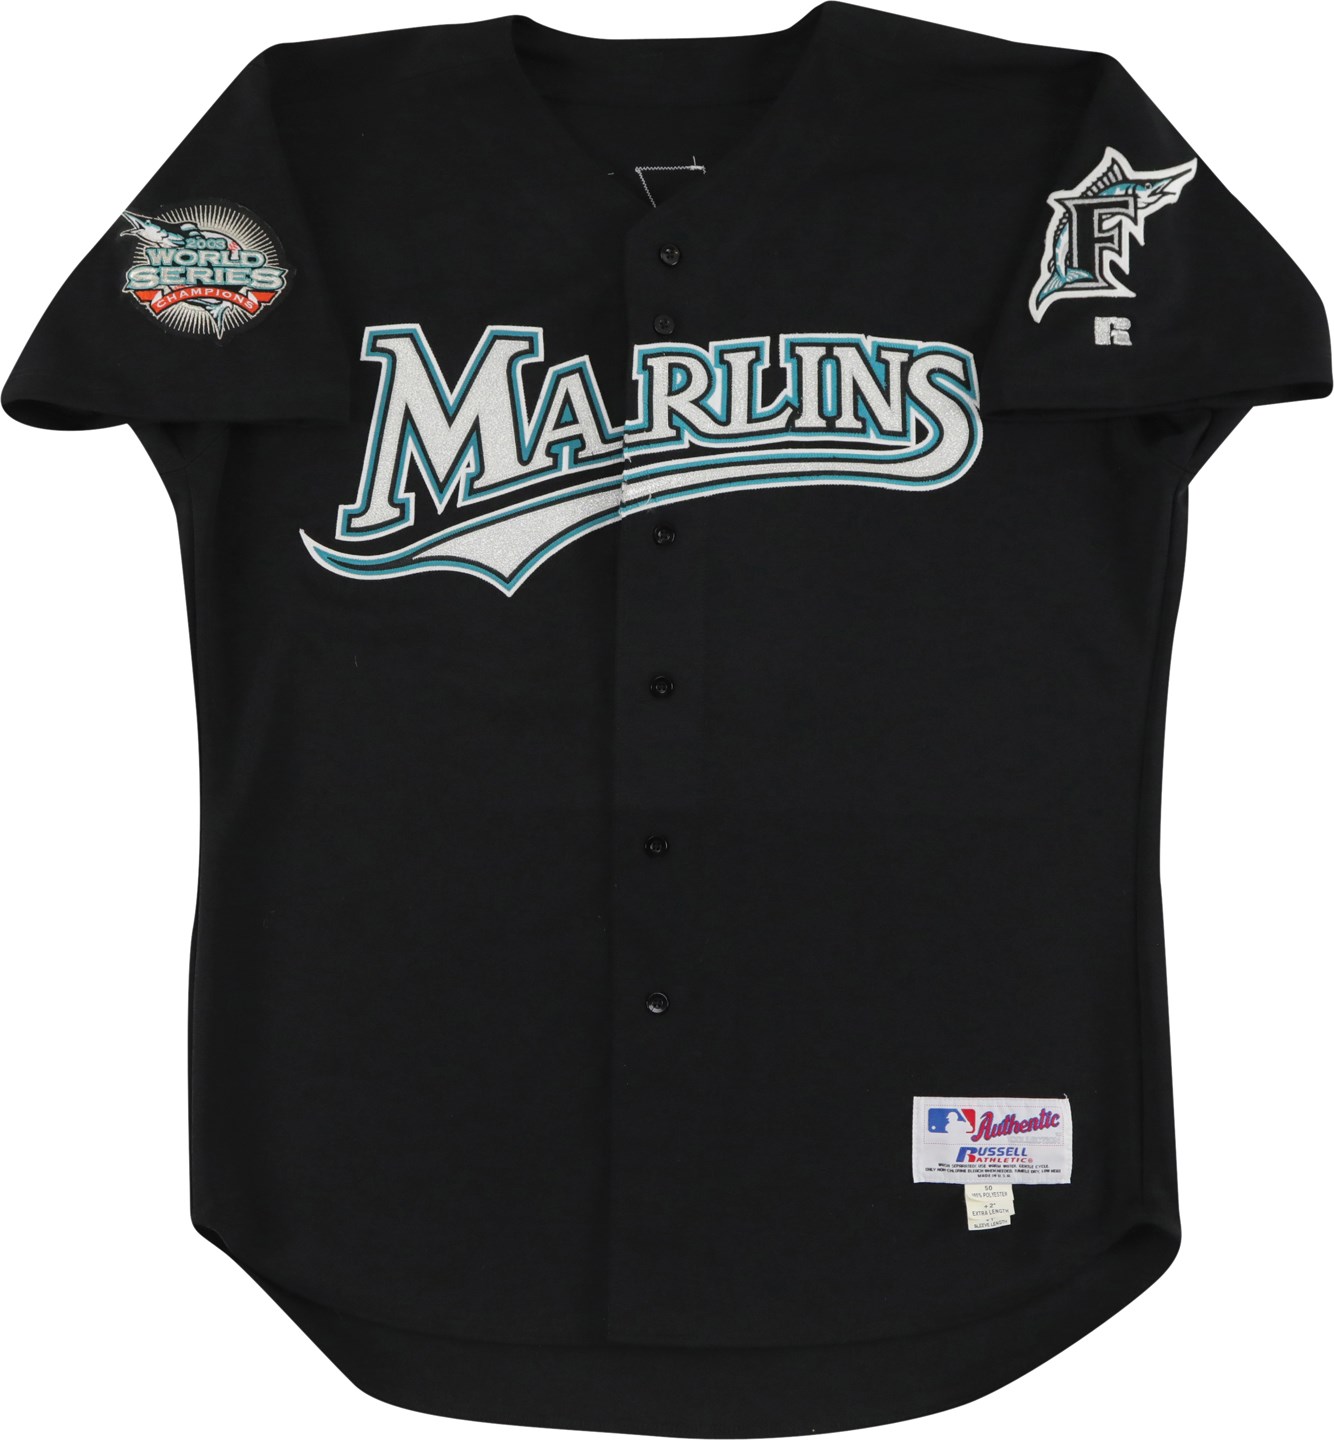 Baseball Equipment - 2004 Josh Beckett Florida Marlins Game Worn Jersey